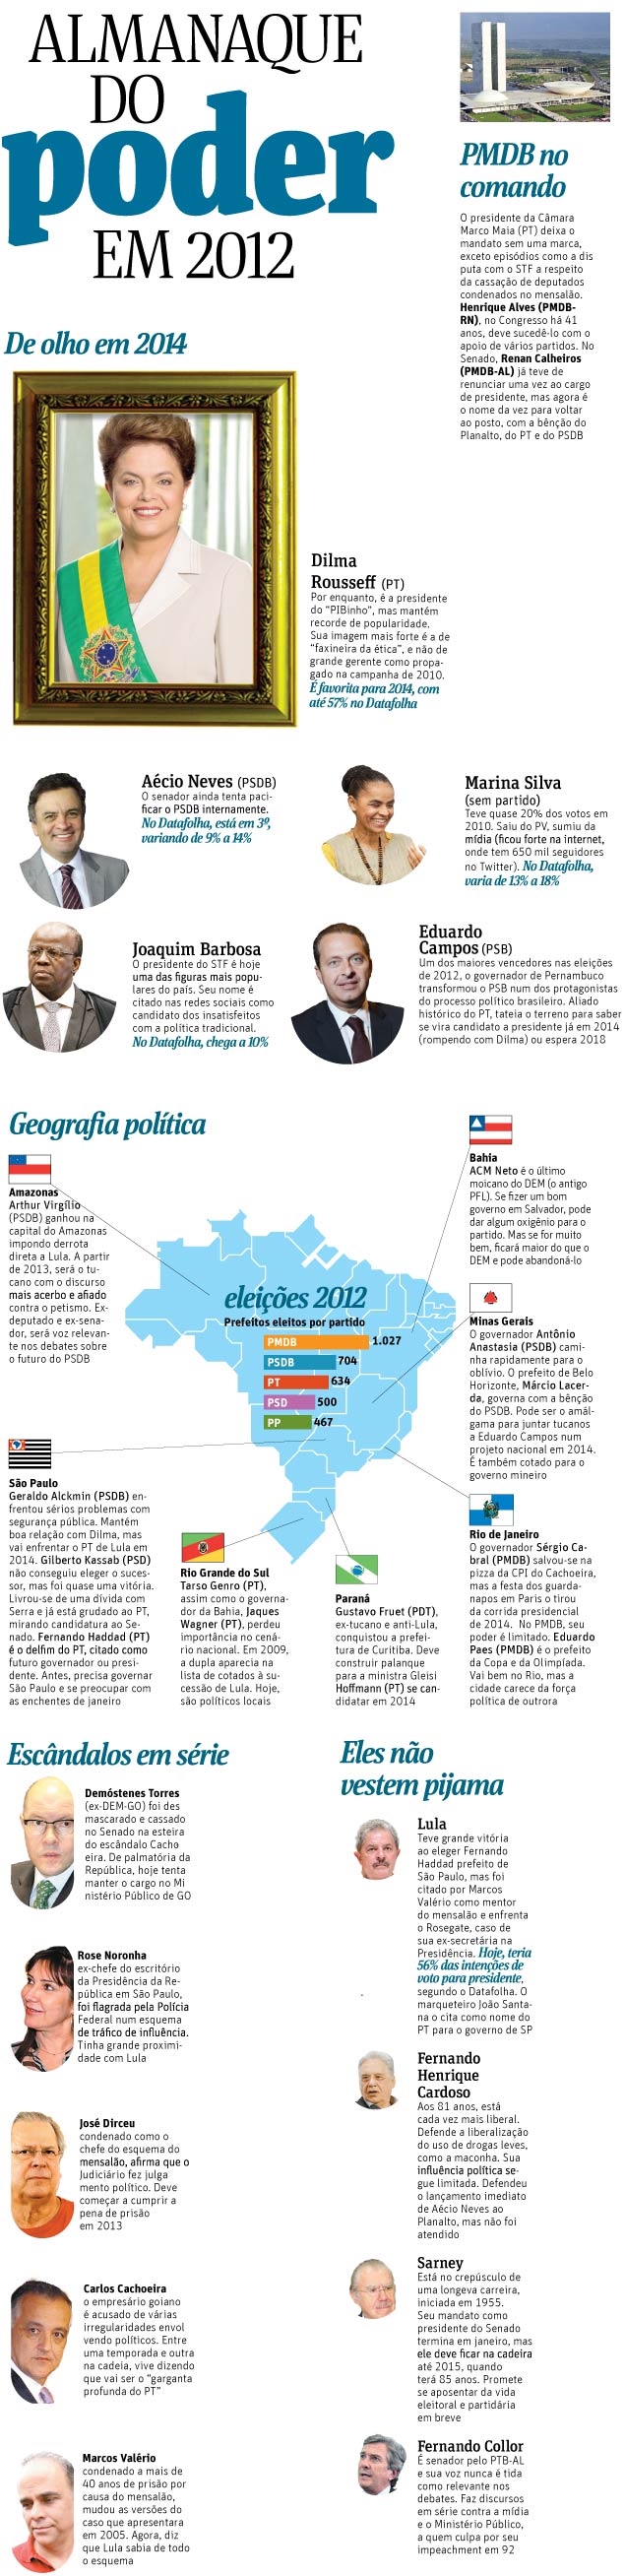 Almanaque do Poder 2012